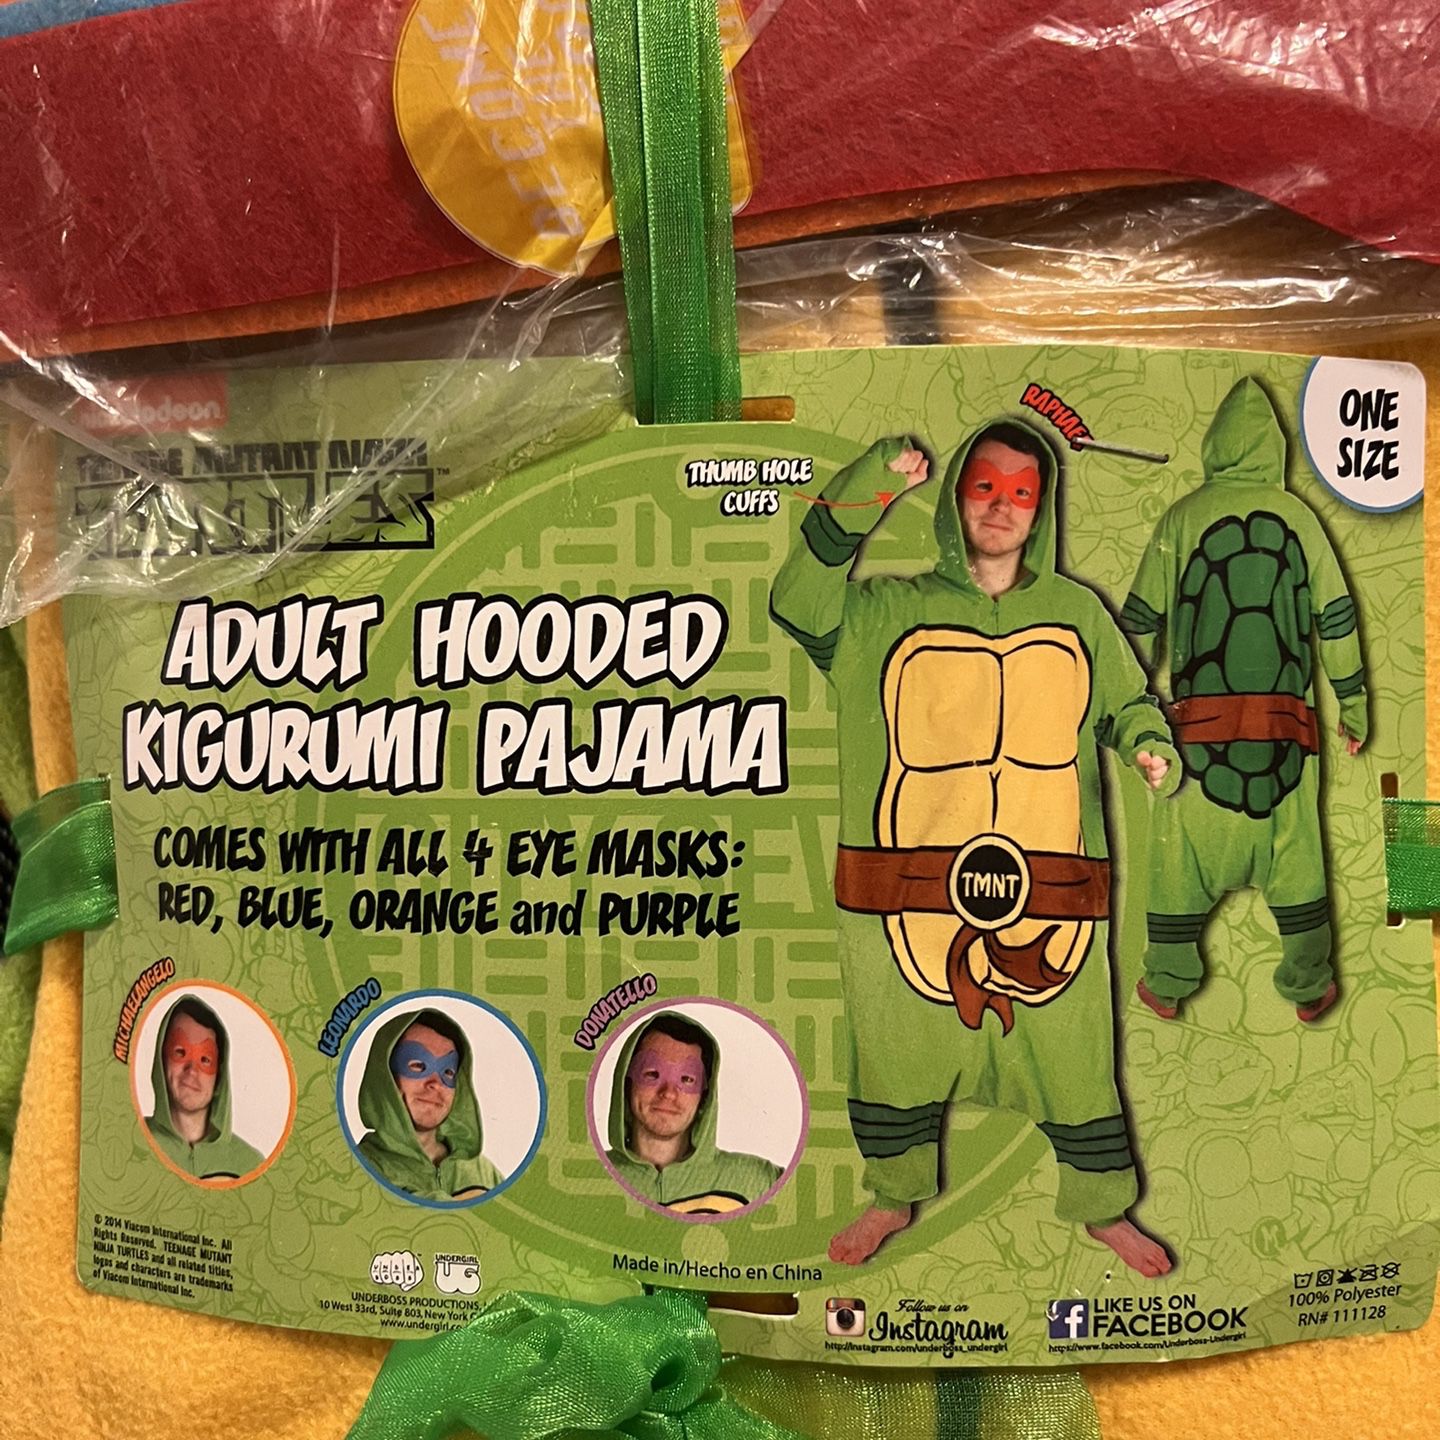 Teenage Mutant Ninja Turtles Adult Hooded Costume /Pajama for Sale in Chula  Vista, CA - OfferUp